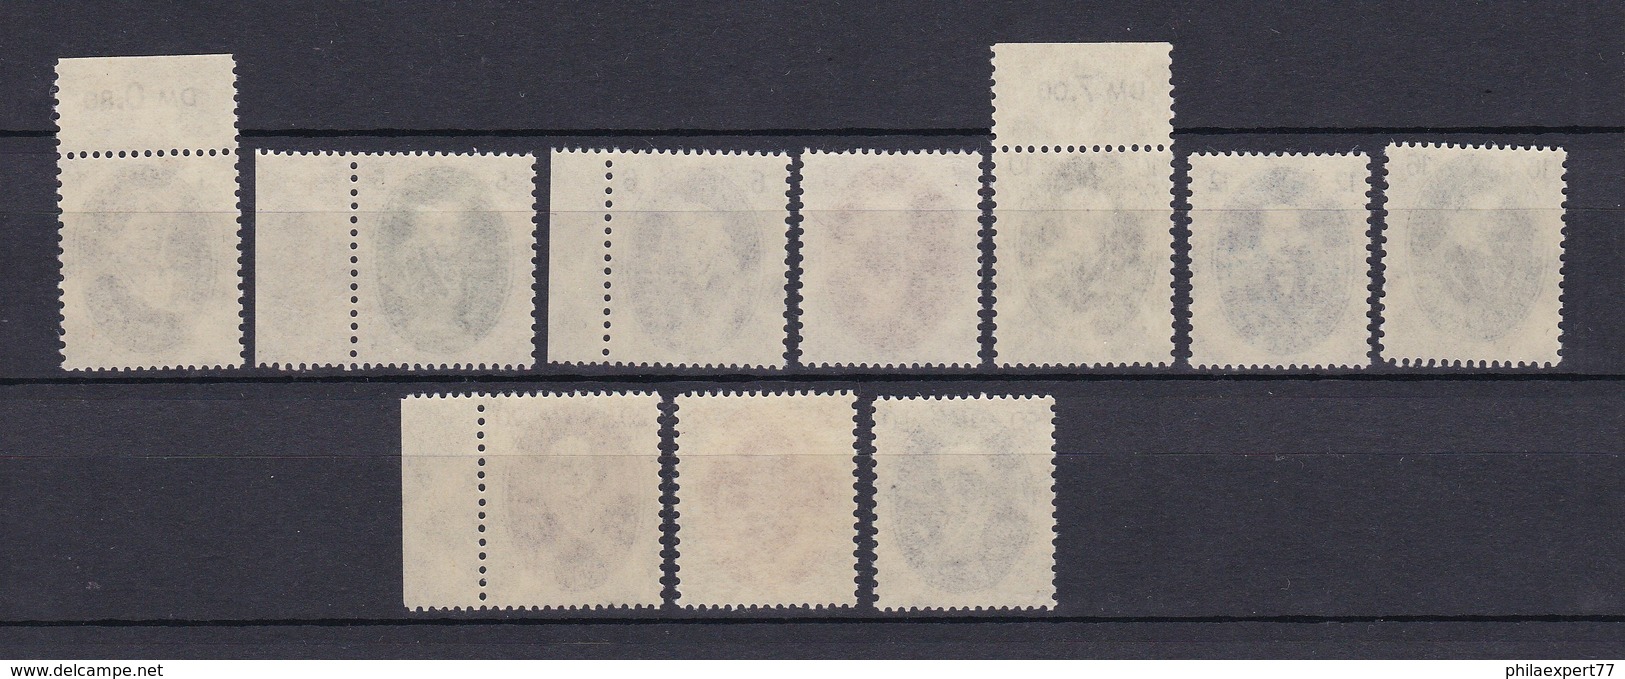 DDR - 1950 - Michel Nr. 261/270 - OR - Postfrisch - 159 Euro - Ungebraucht